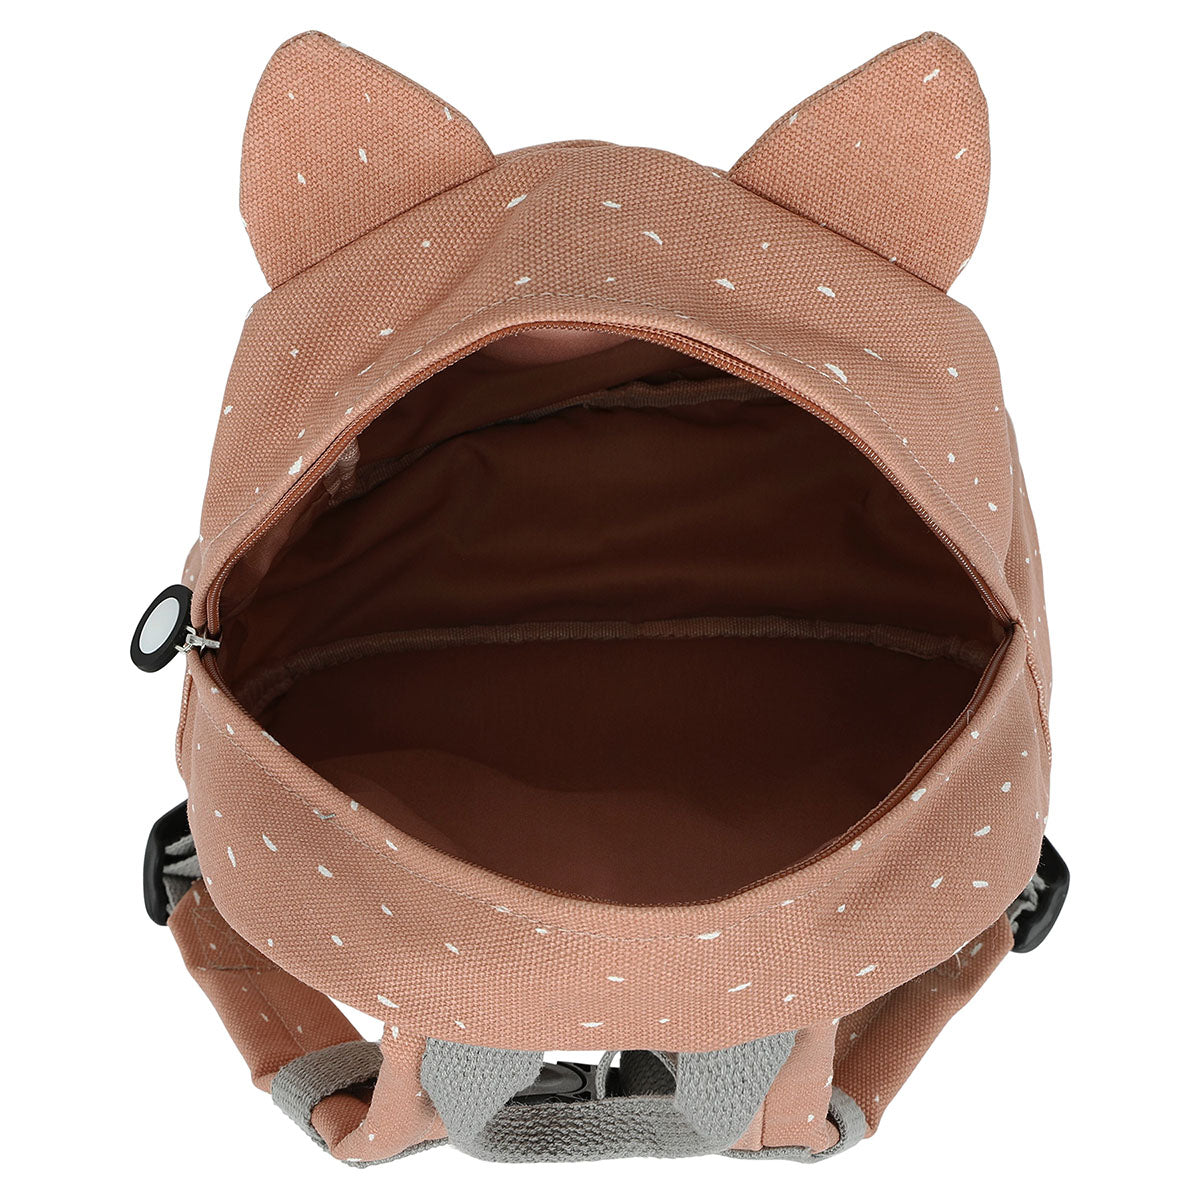 Met de Trixie Mrs. Cat rugzak klein ben je klaar voor avontuur! In deze roze schooltas kan je al je spulletjes kwijt voor een dagje weg. De roze rugzak komt in de vorm van een lieve kat. VanZus.